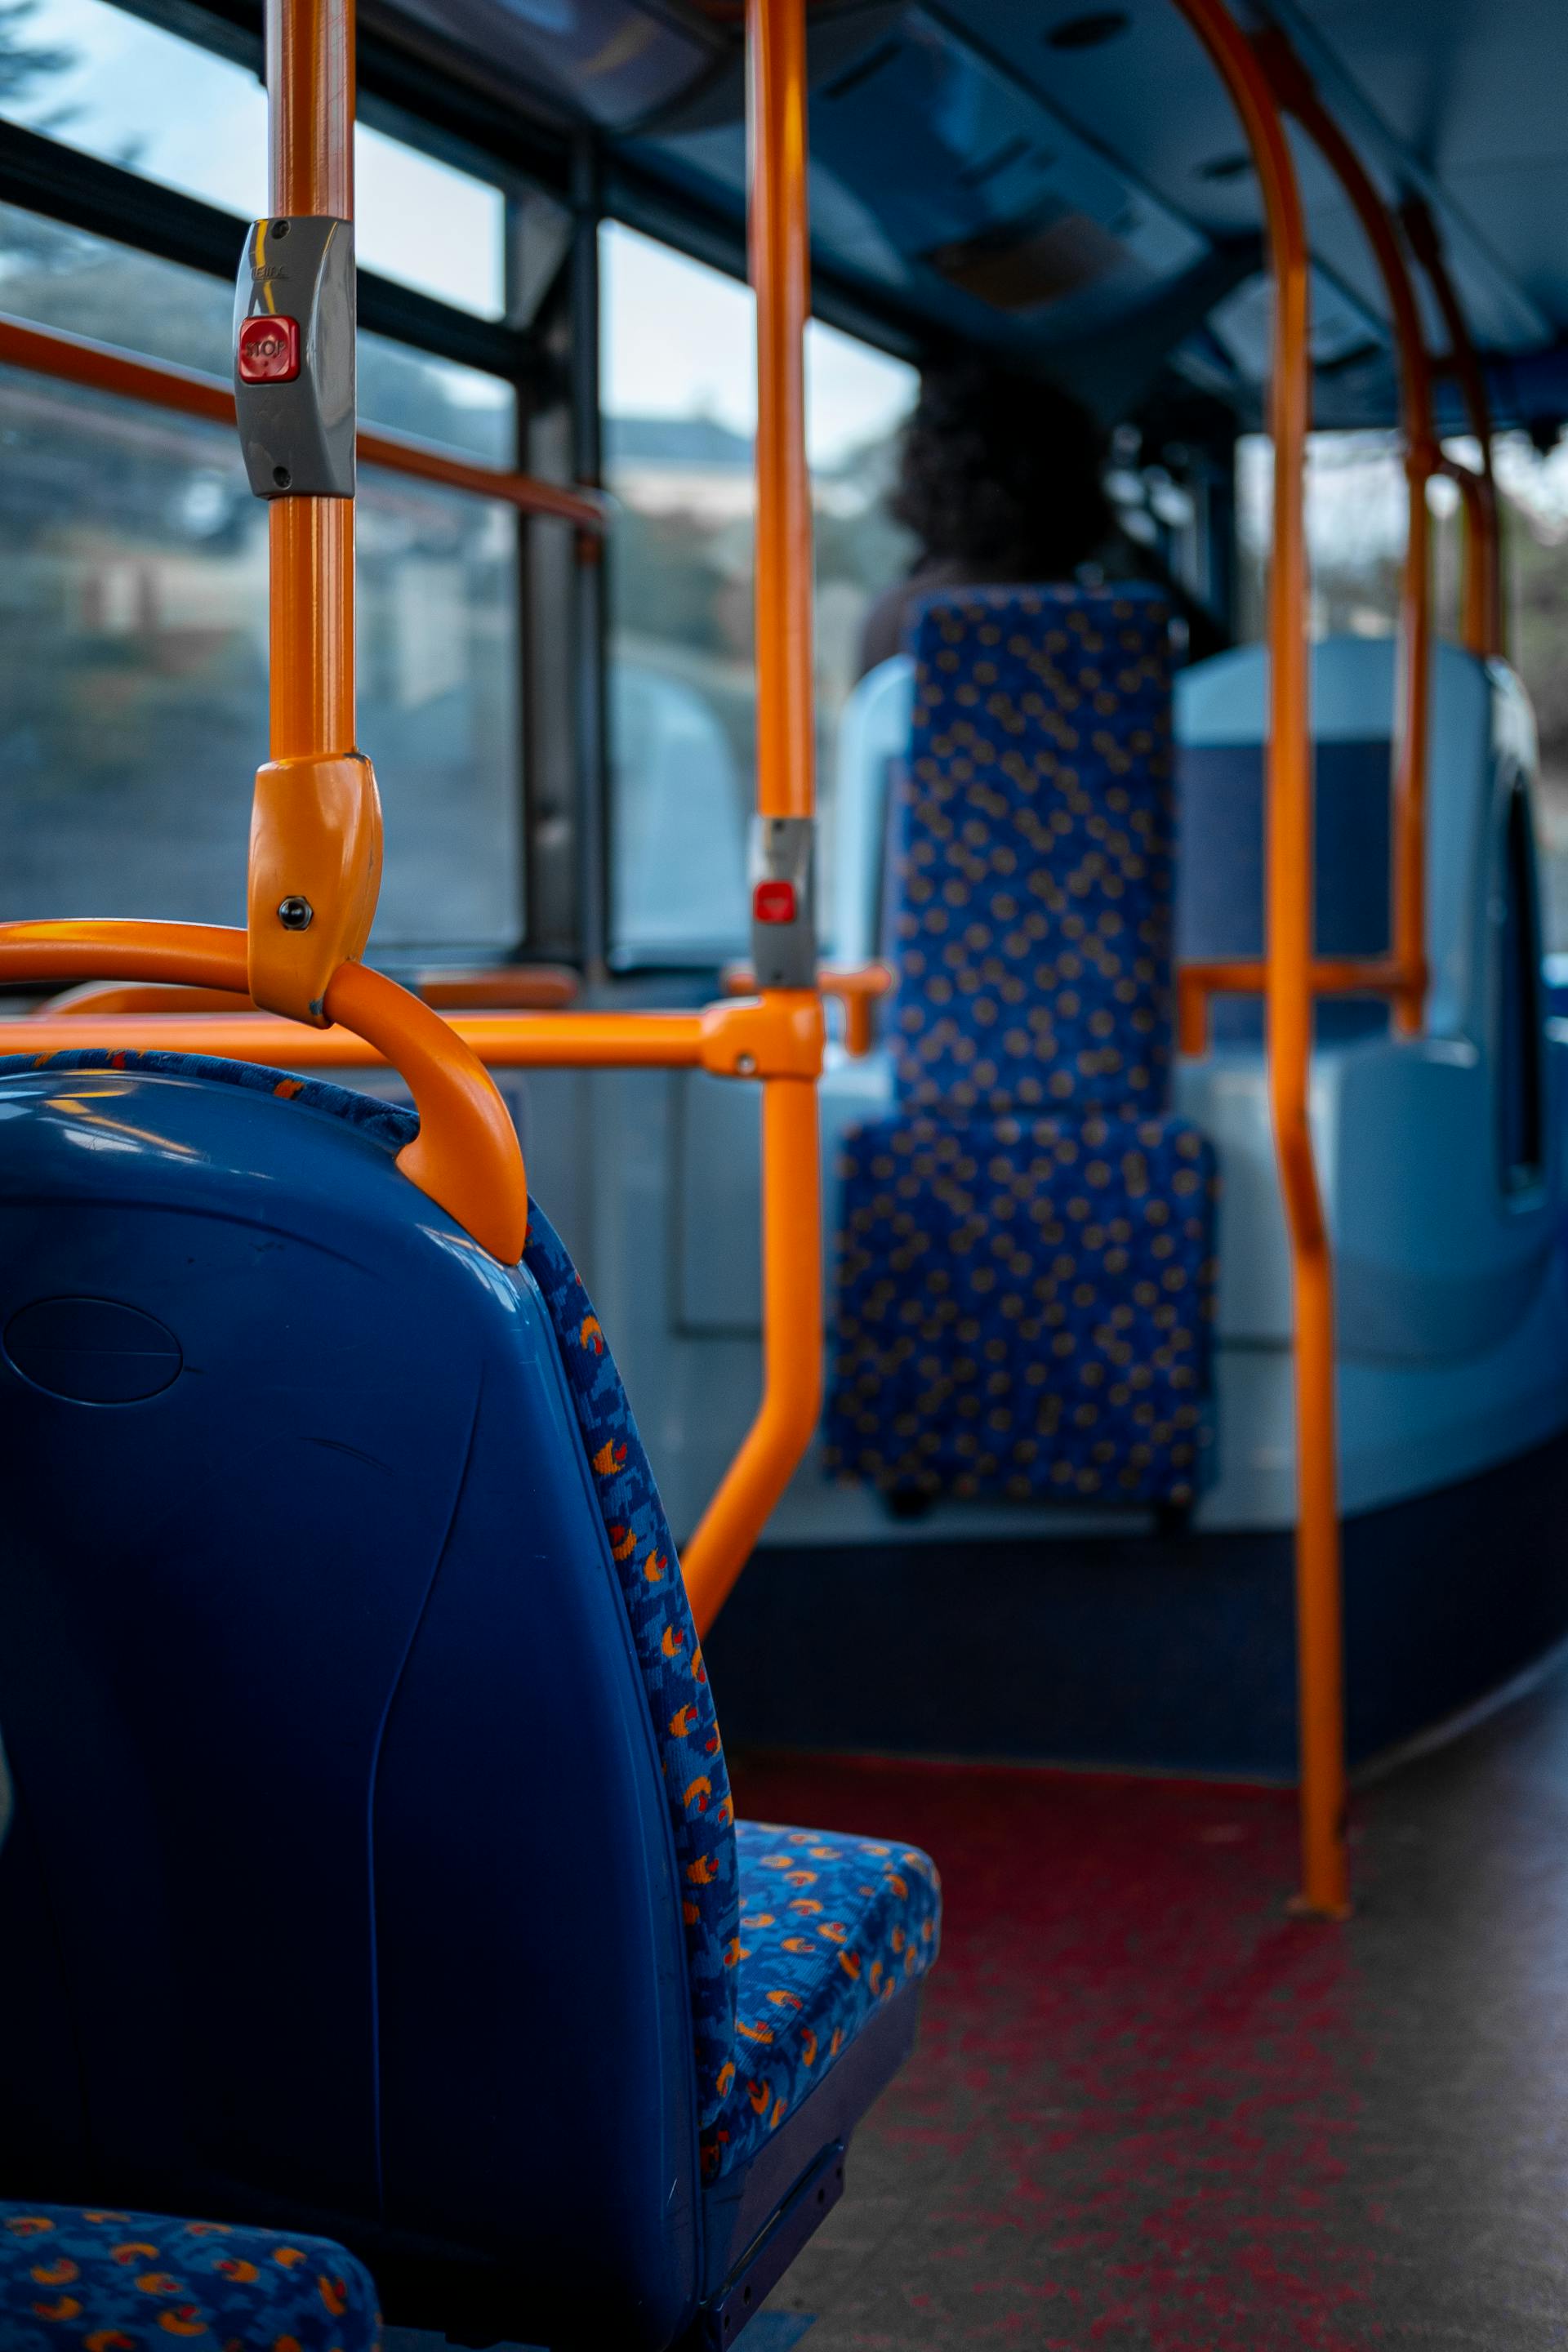 Sitze in einem Bus | Quelle: Pexels